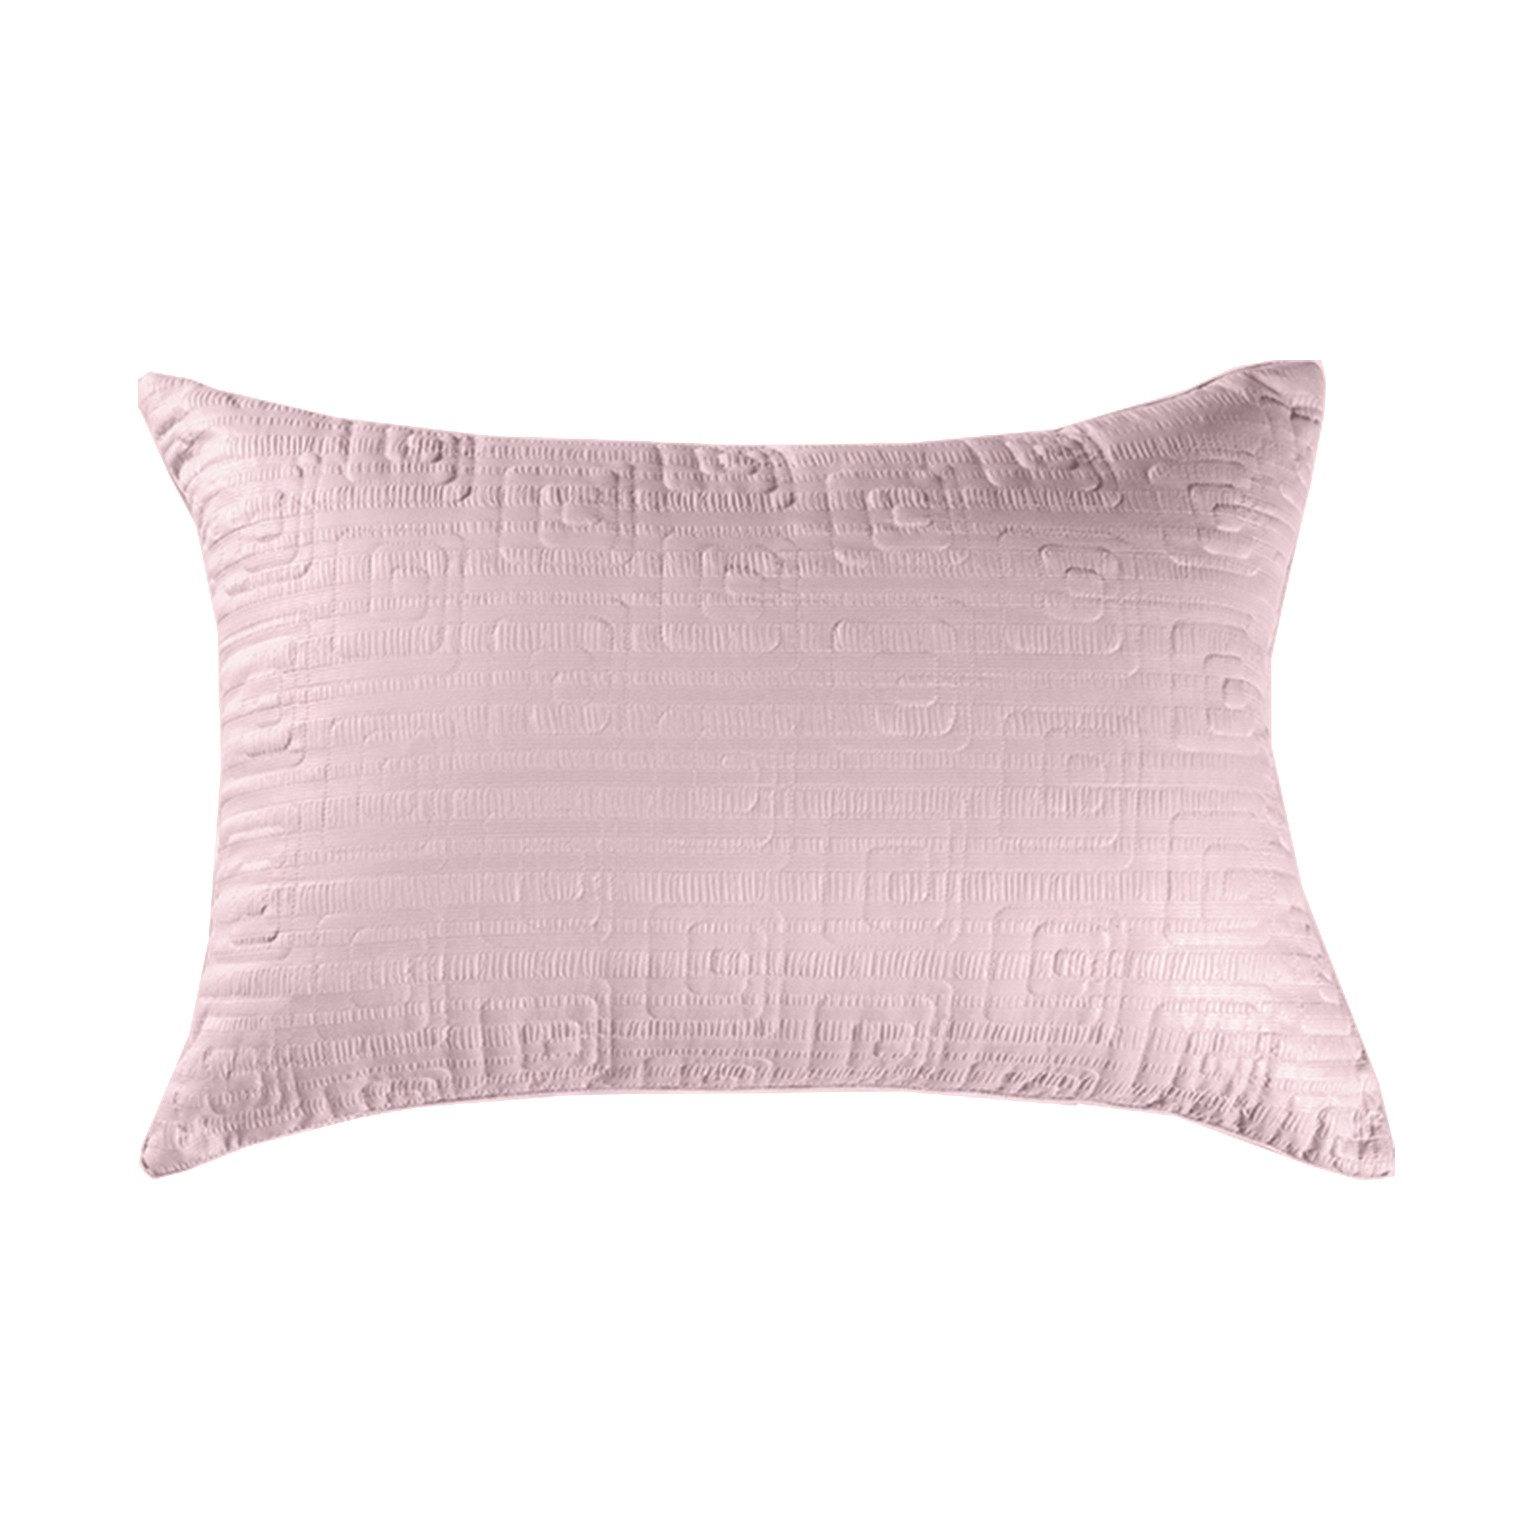 Подушка Rosaline цвет: розовый средняя (50х72), размер 50х72 pve759440 Подушка Rosaline цвет: розовый средняя (50х72) - фото 1